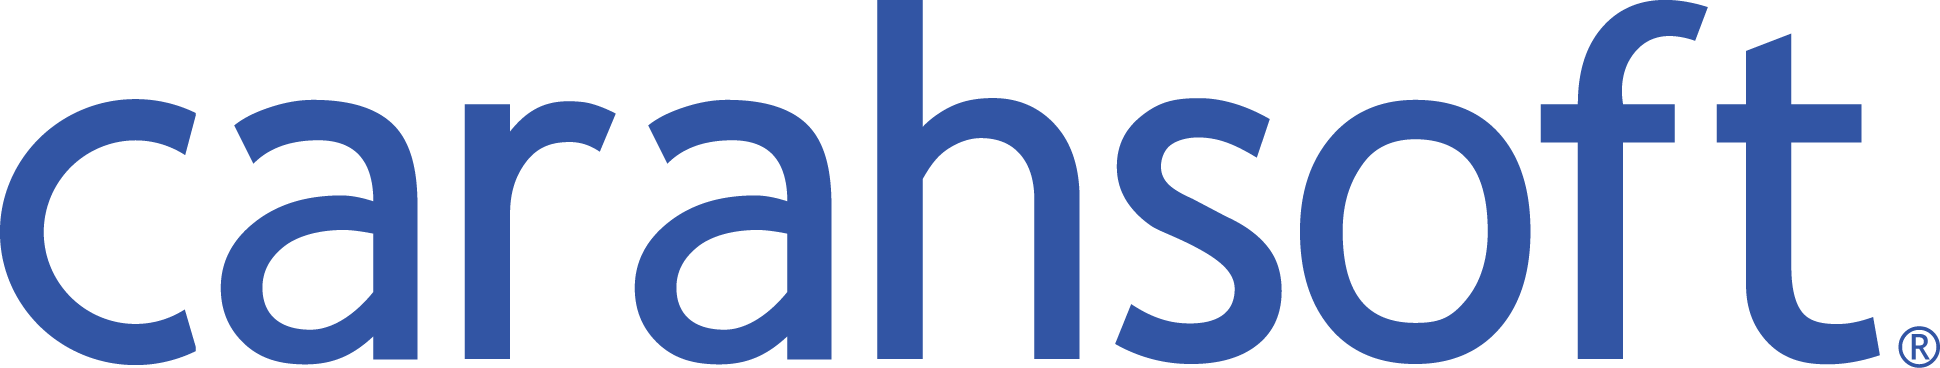 Carahsoft_logo_partner